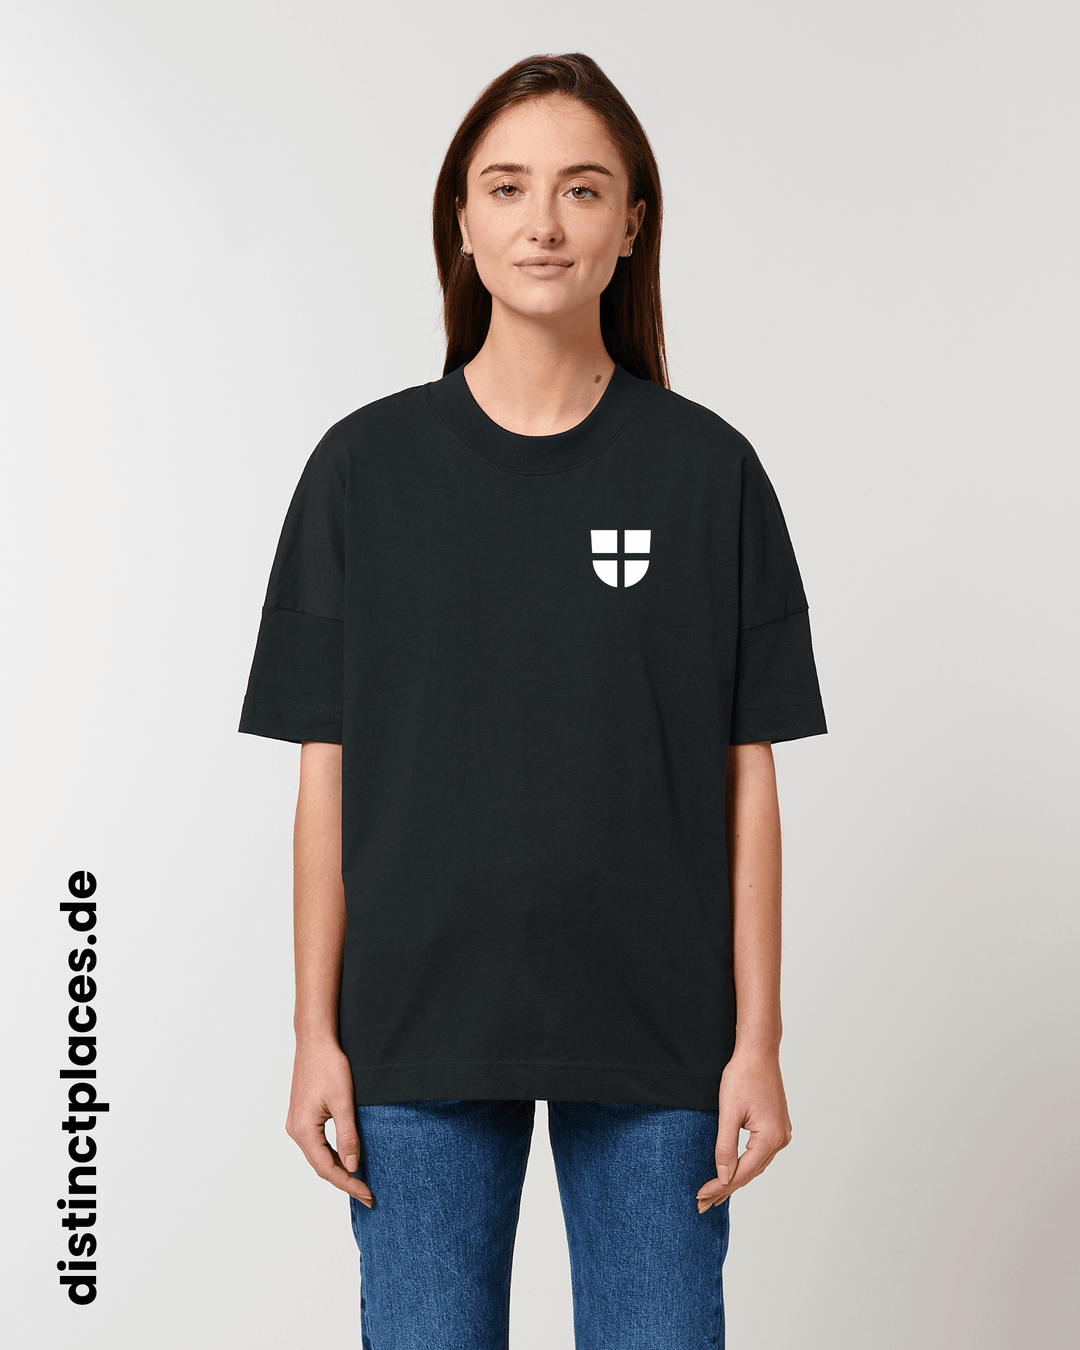 Frau von vorne trägt schwarzes fairtrade, vegan und bio-baumwoll T-Shirt mit einem minimalistischem weißen Logo, beziehungsweise Wappen für Freiburg